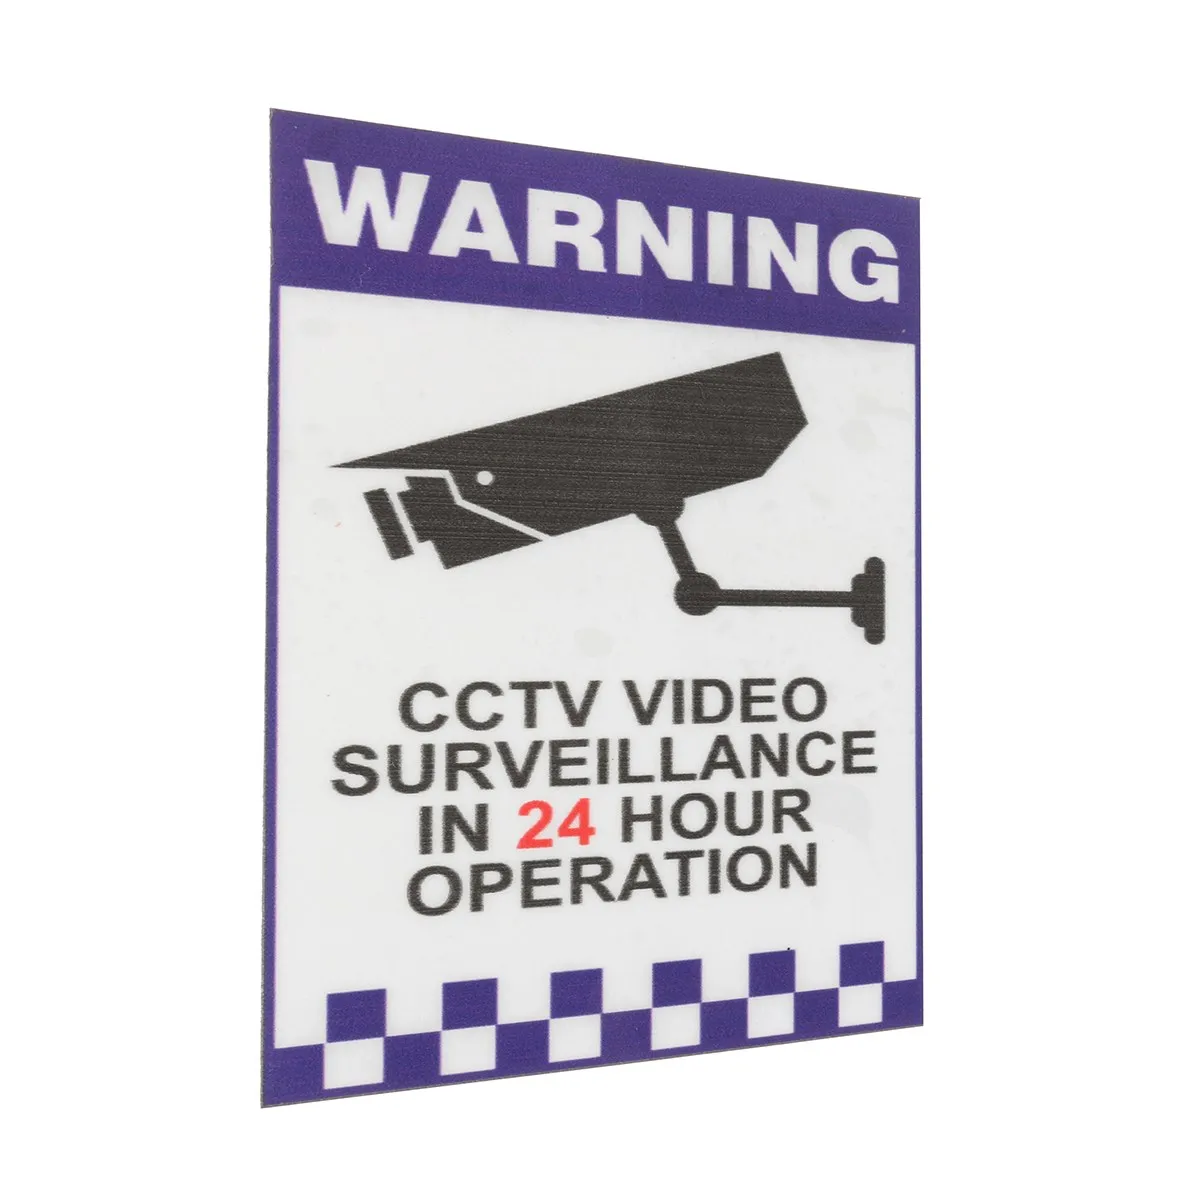 Safurance 24 часа внутреннее Предупреждение CCTV безопасности камеры скрытого видеонаблюдения Наклейка Стикер знак безопасности дома